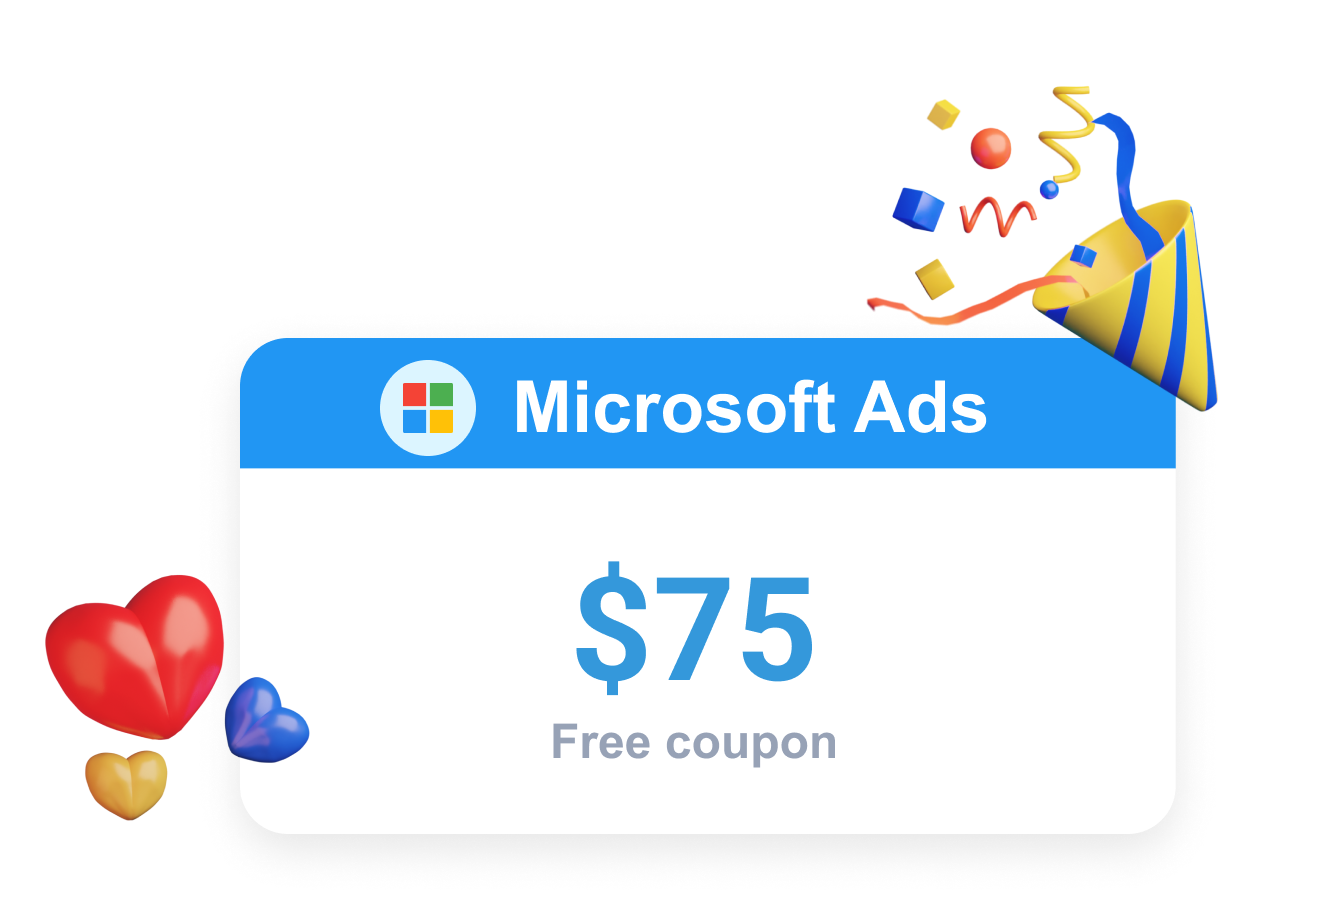  Clever Ads  , Bing  Ads  ücretsiz kuponu şeklinde bir Microsoft  Ads  Promosyonu sunar